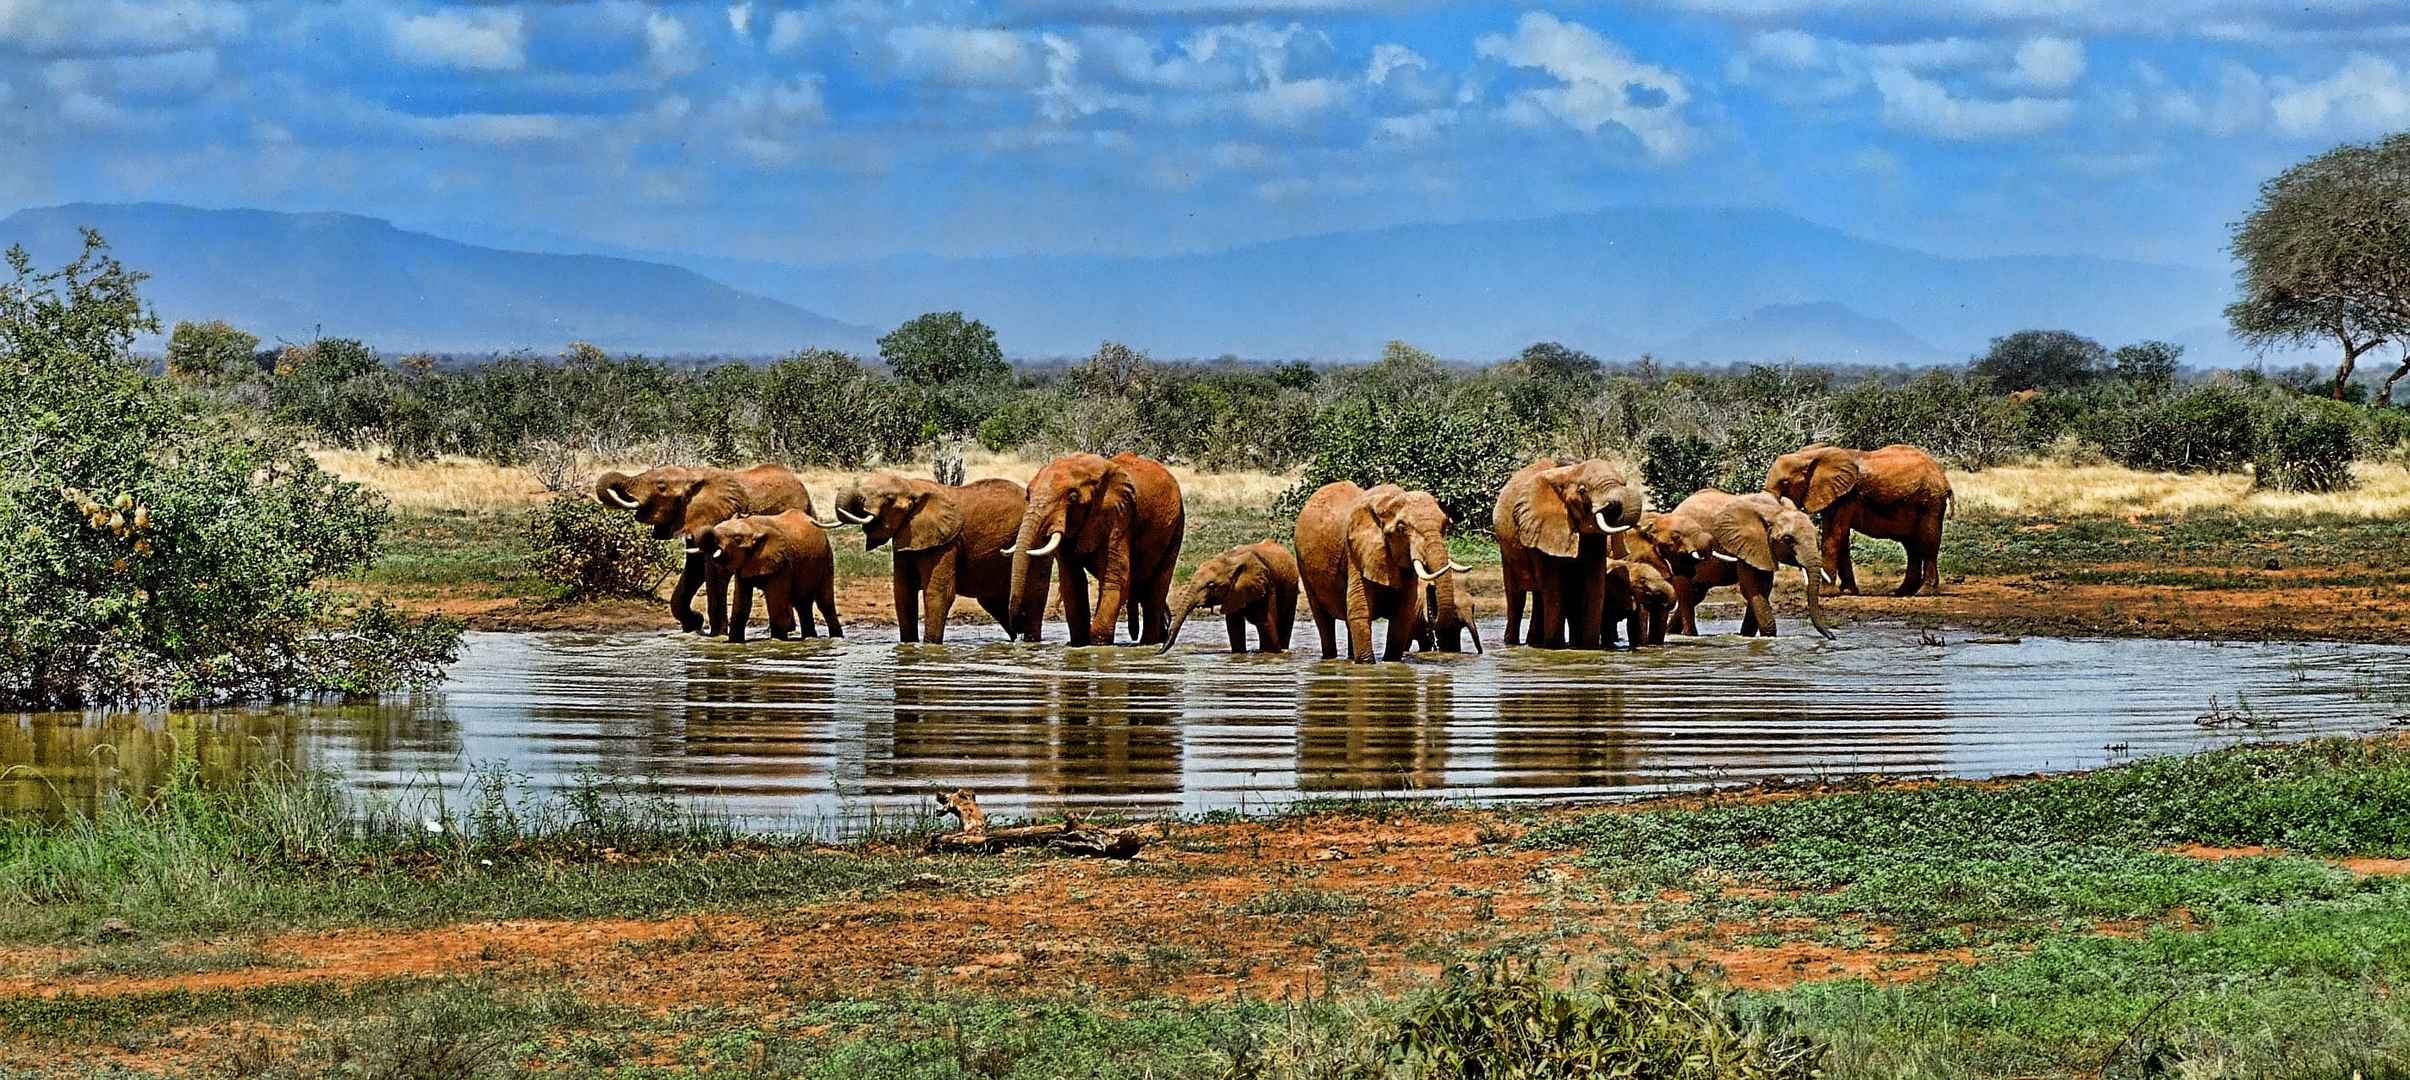 非洲草原大象群壁纸